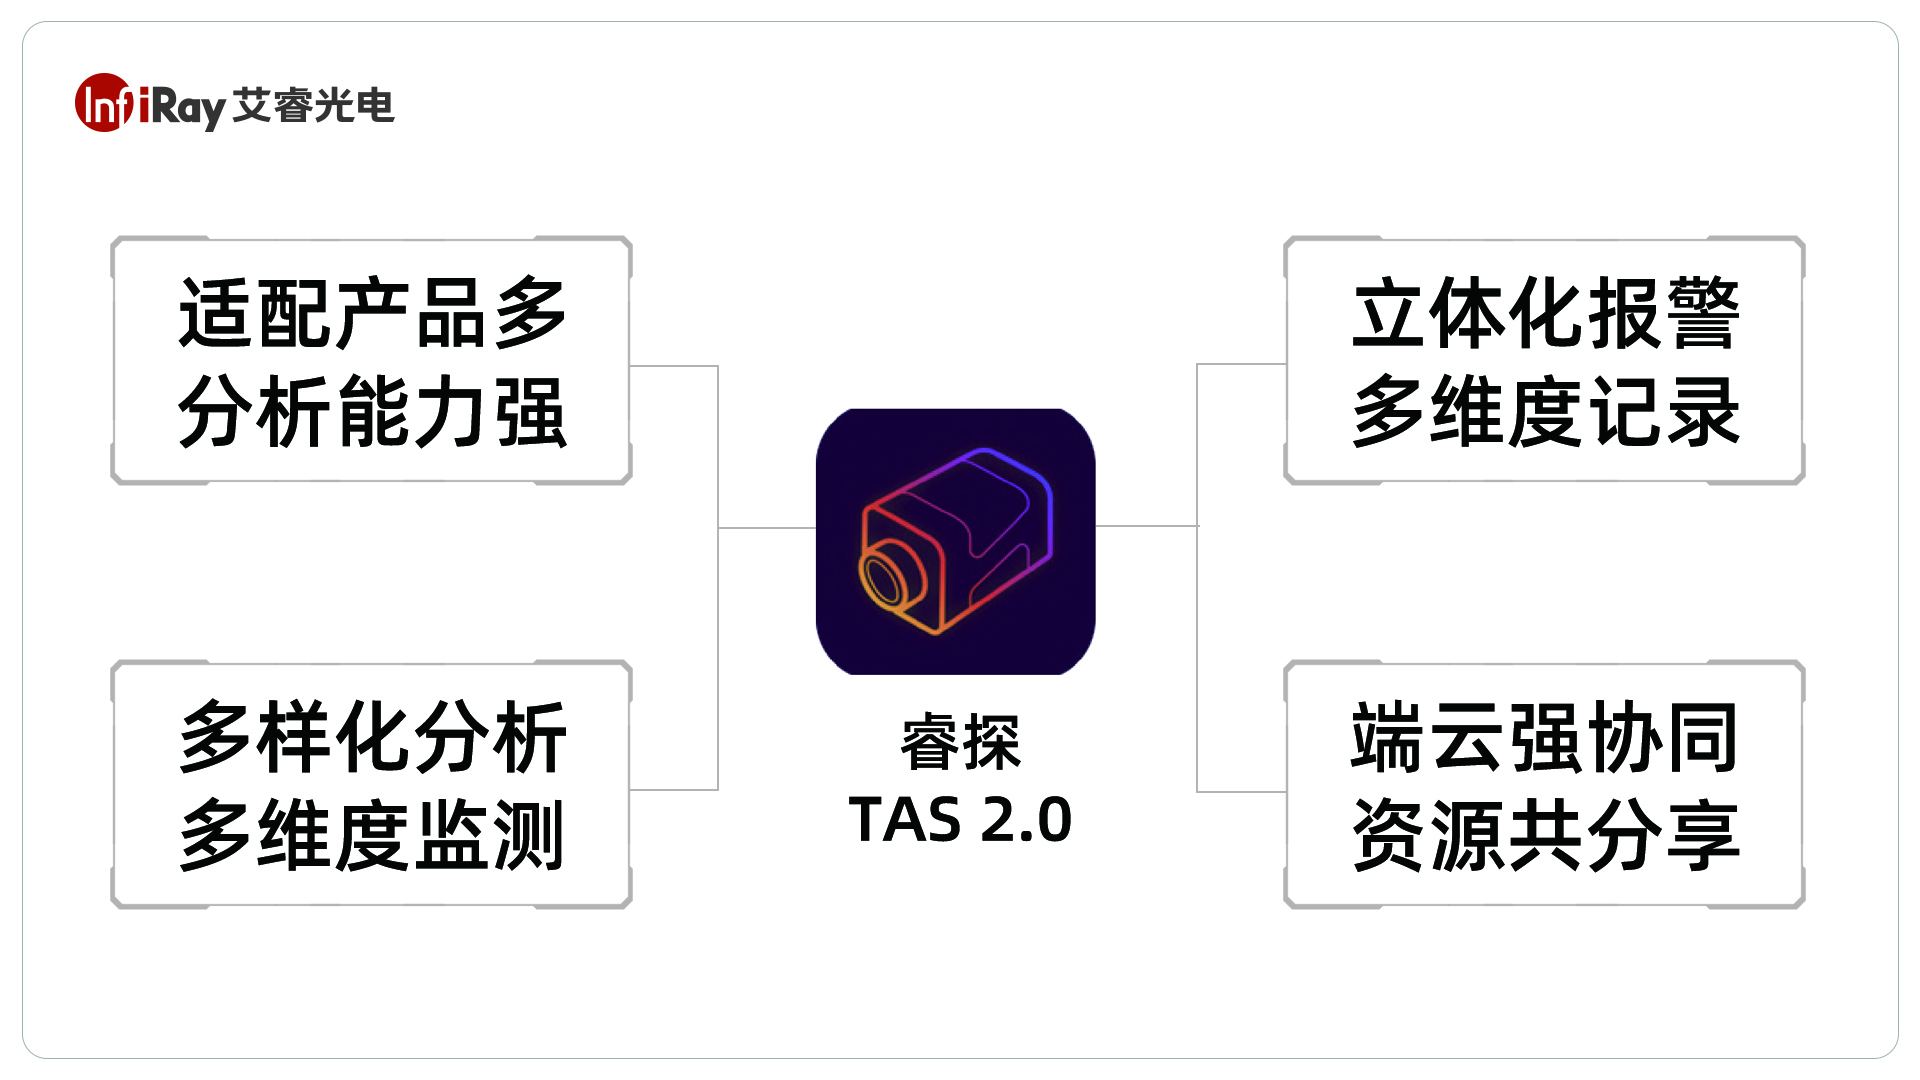 艾睿工业软件|睿探TAS 2.0能力图谱，红外热像仪热图分析利器